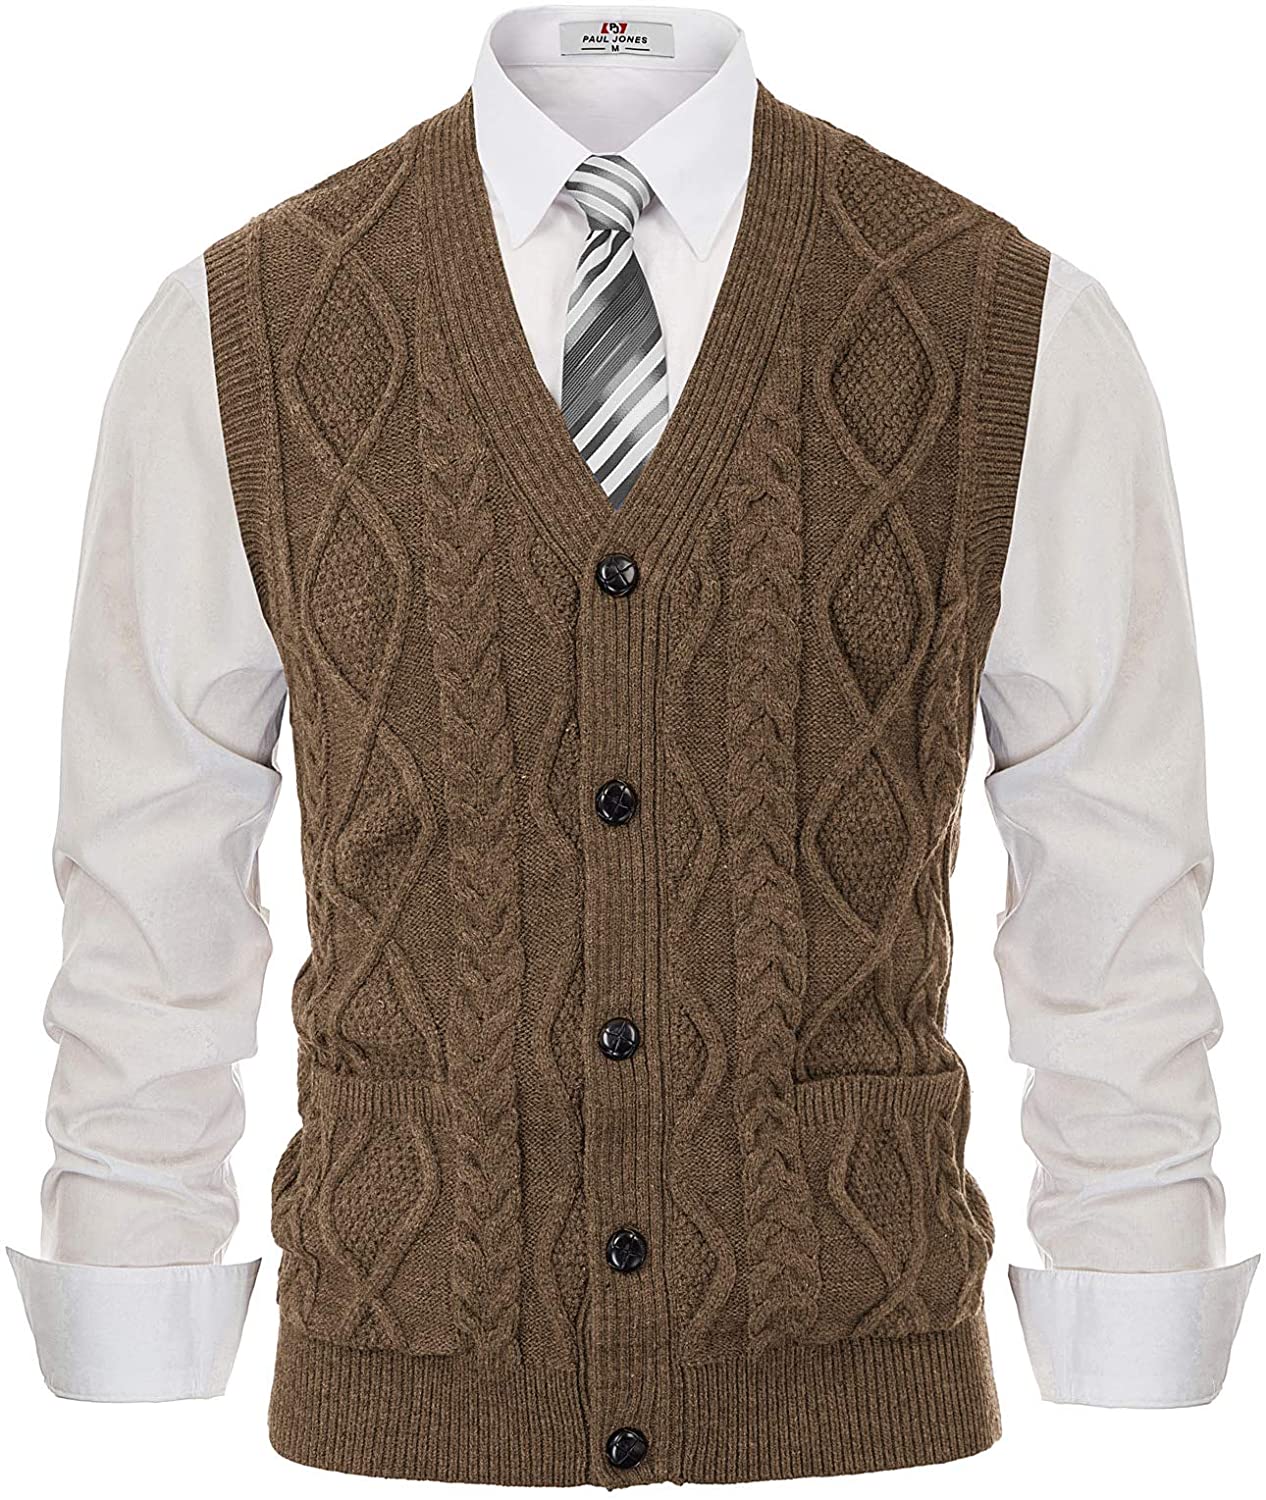 PJ PAUL JONES Men's V-Neck Knitting Vest Classic Sleeveless Pullover Sweater Vest 